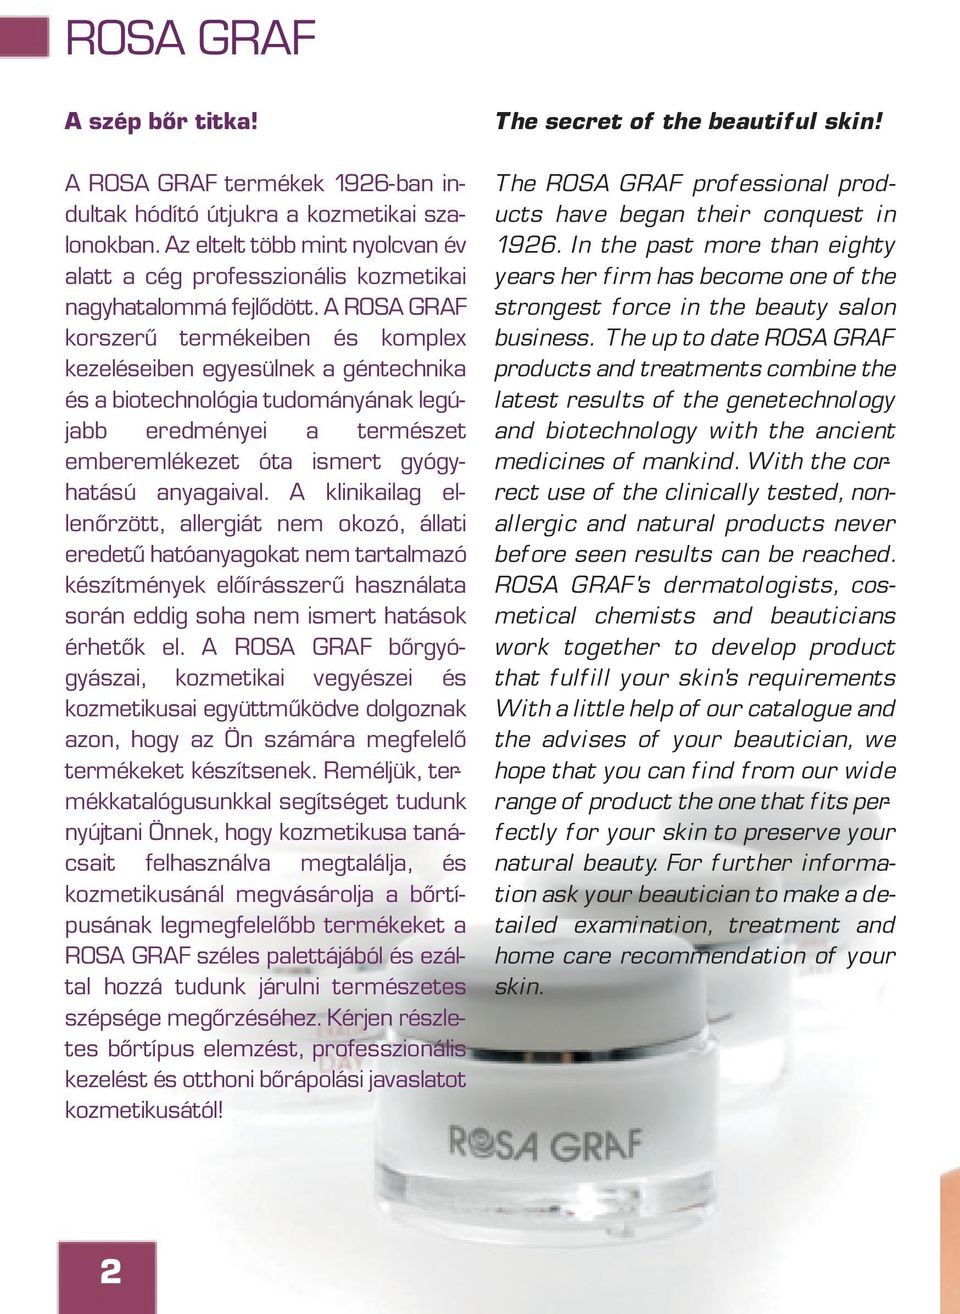 A ROSA GRAF korszerû termékeiben és komplex kezeléseiben egyesülnek a géntechnika és a biotechnológia tudományának legújabb eredményei a természet emberemlékezet óta ismert gyógyhatású anyagaival.